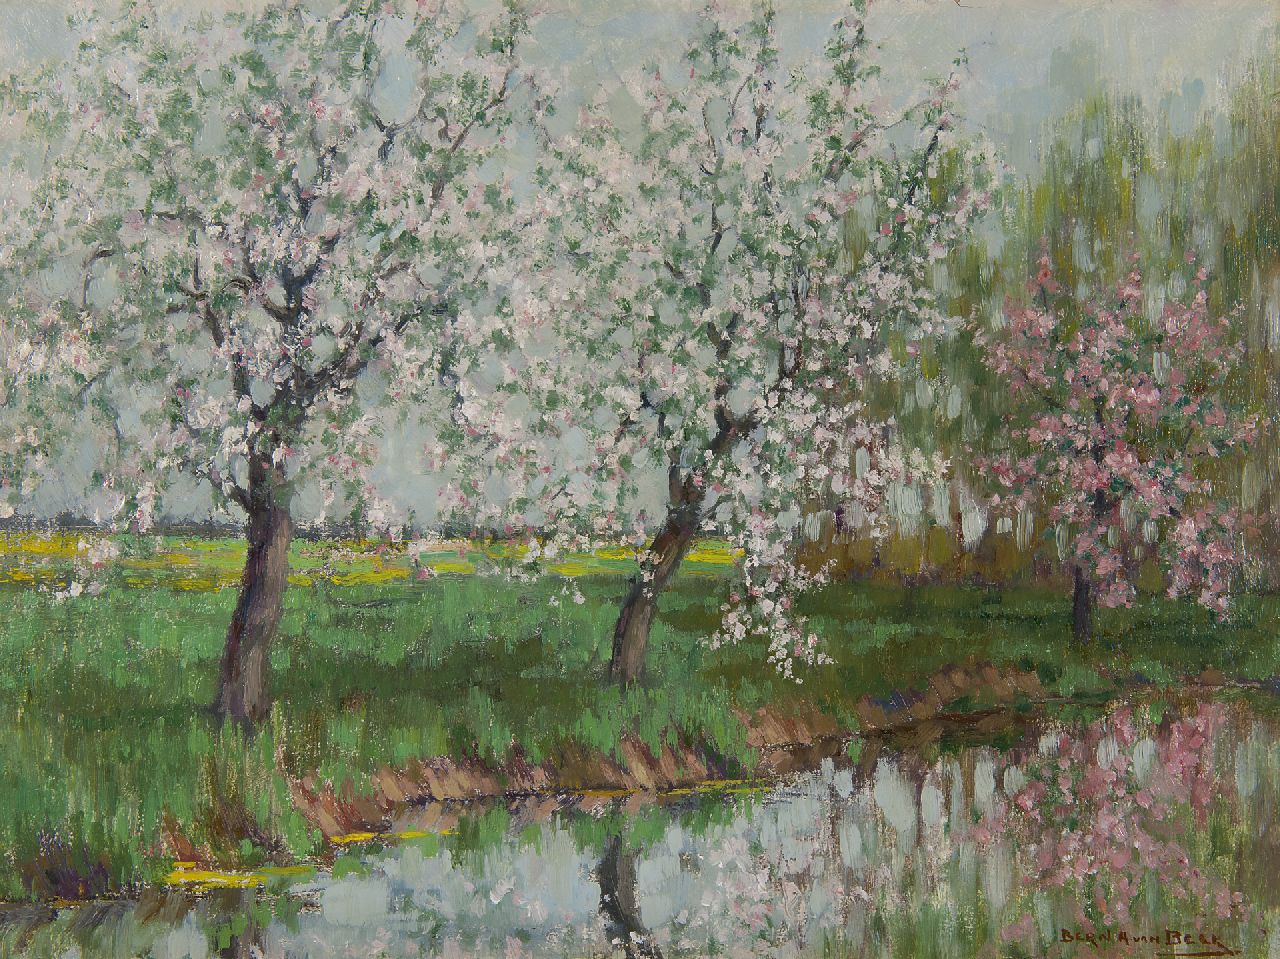 Beek B.A. van | Bernardus Antonie van Beek, Flowering trees along the water, oil on painter's board 30.5 x 40.4 cm, signed l.r.